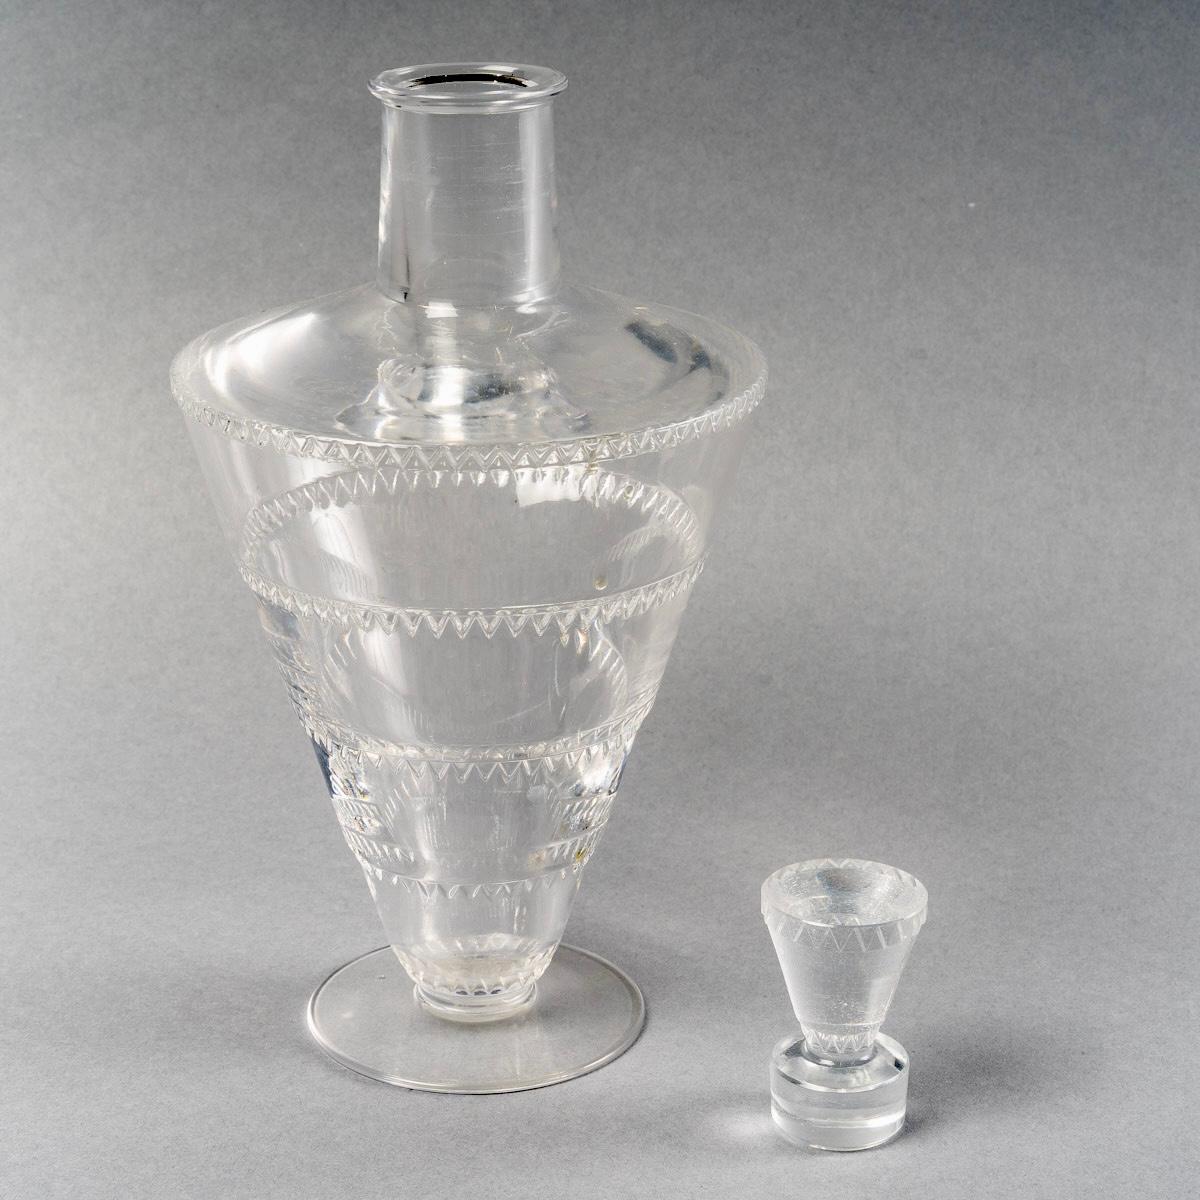 1932 René Lalique Set of Glasses Decanter Pitcher Vouvray Clear Glass 42 Pieces 3